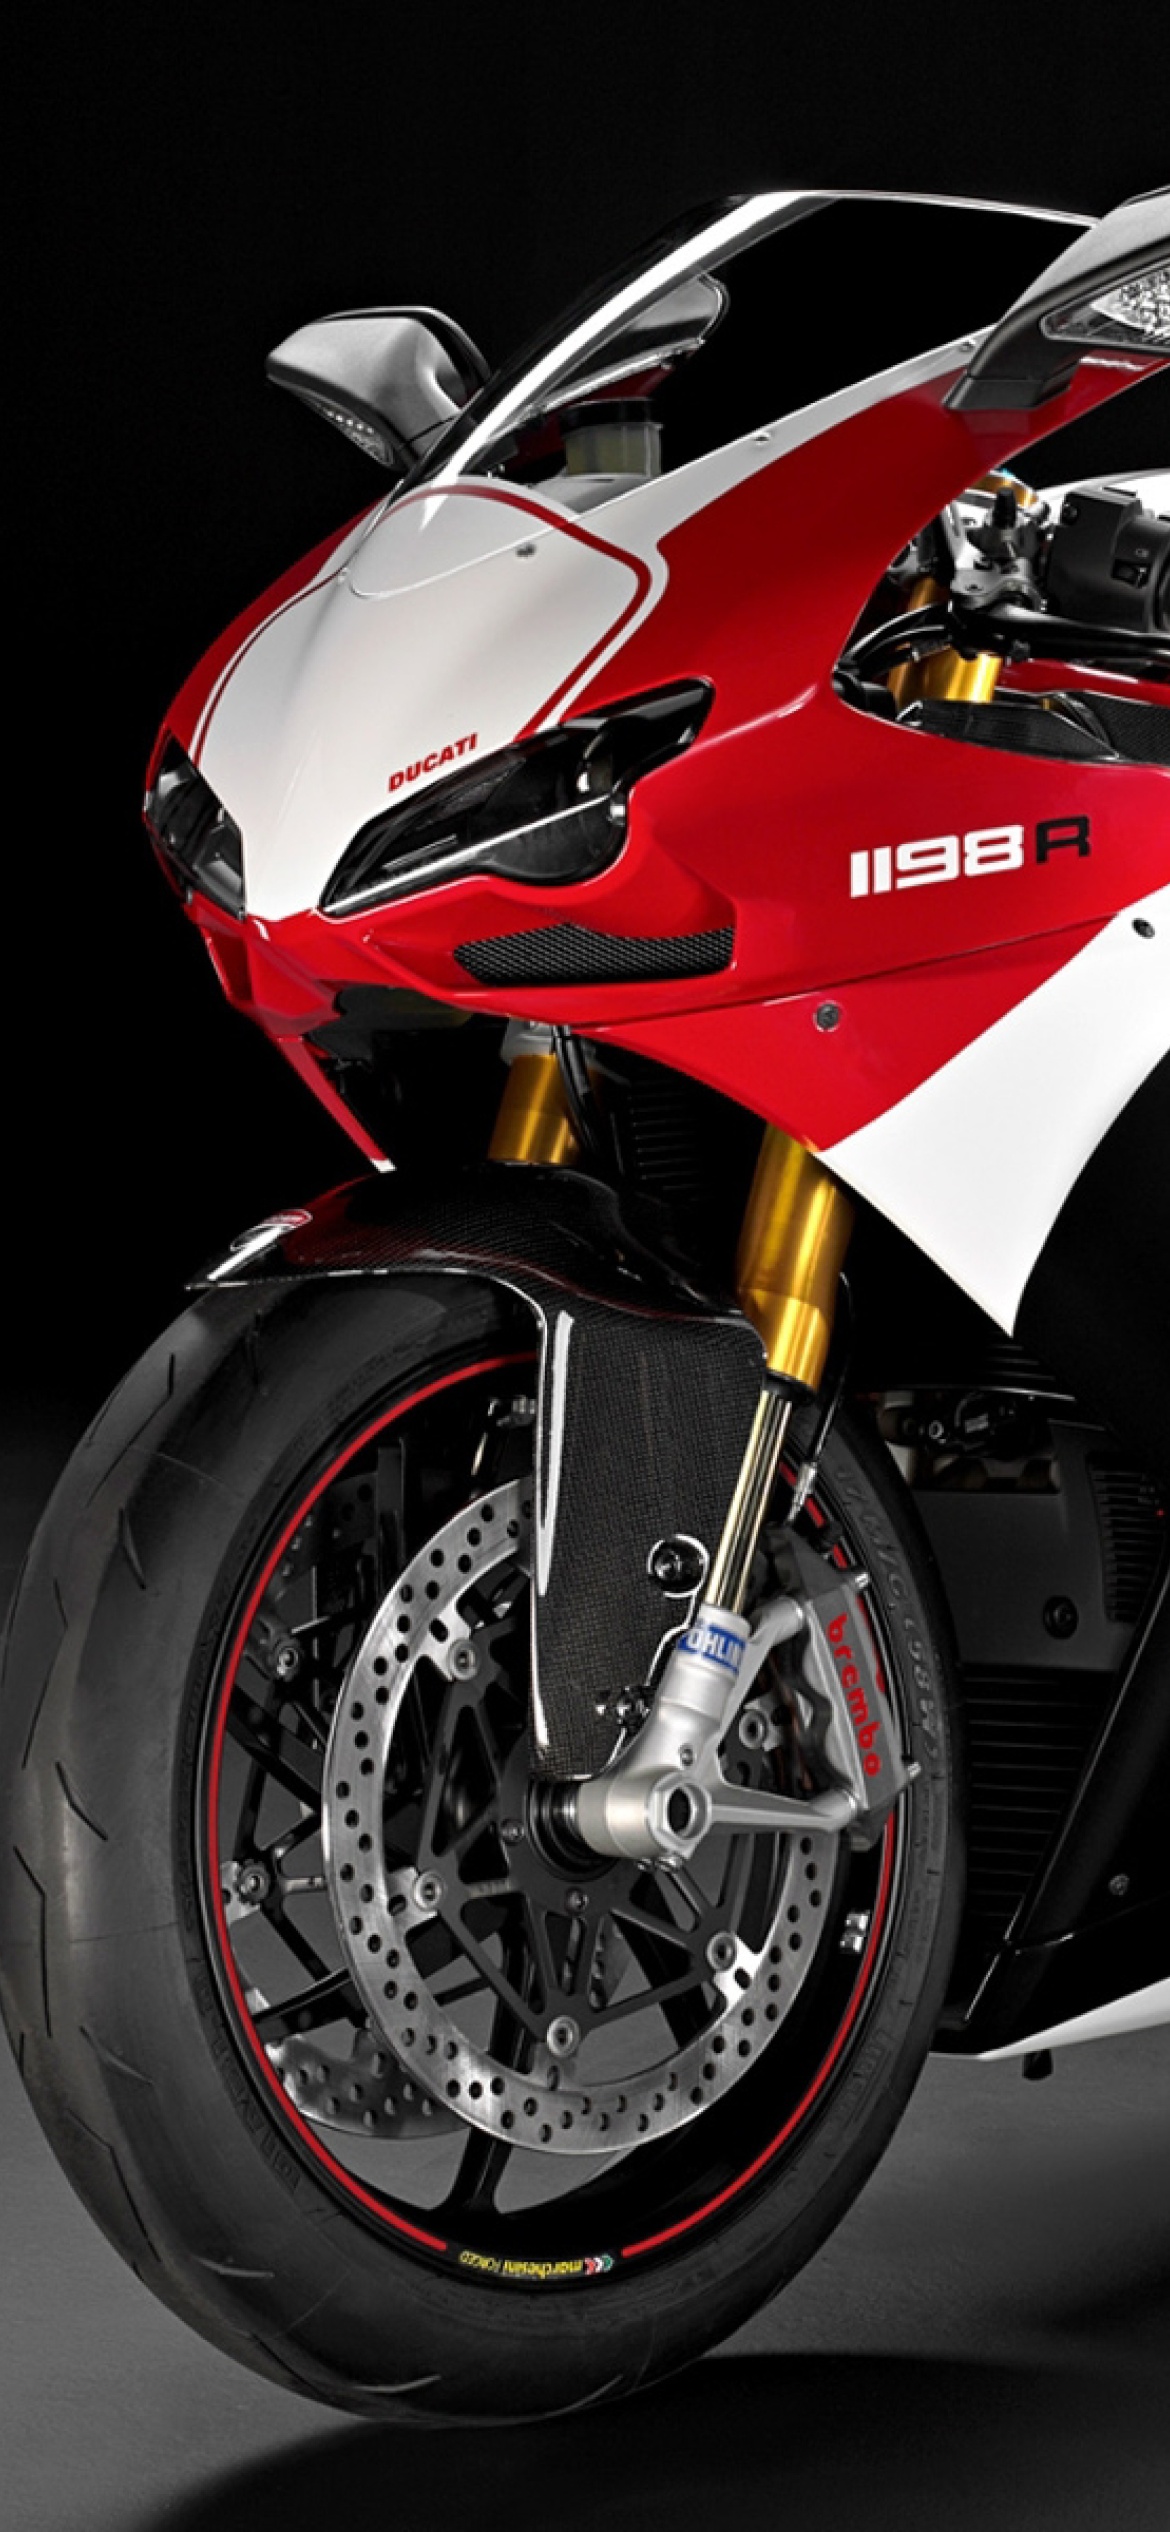 Обои Superbike Ducati 1198 R 1170x2532